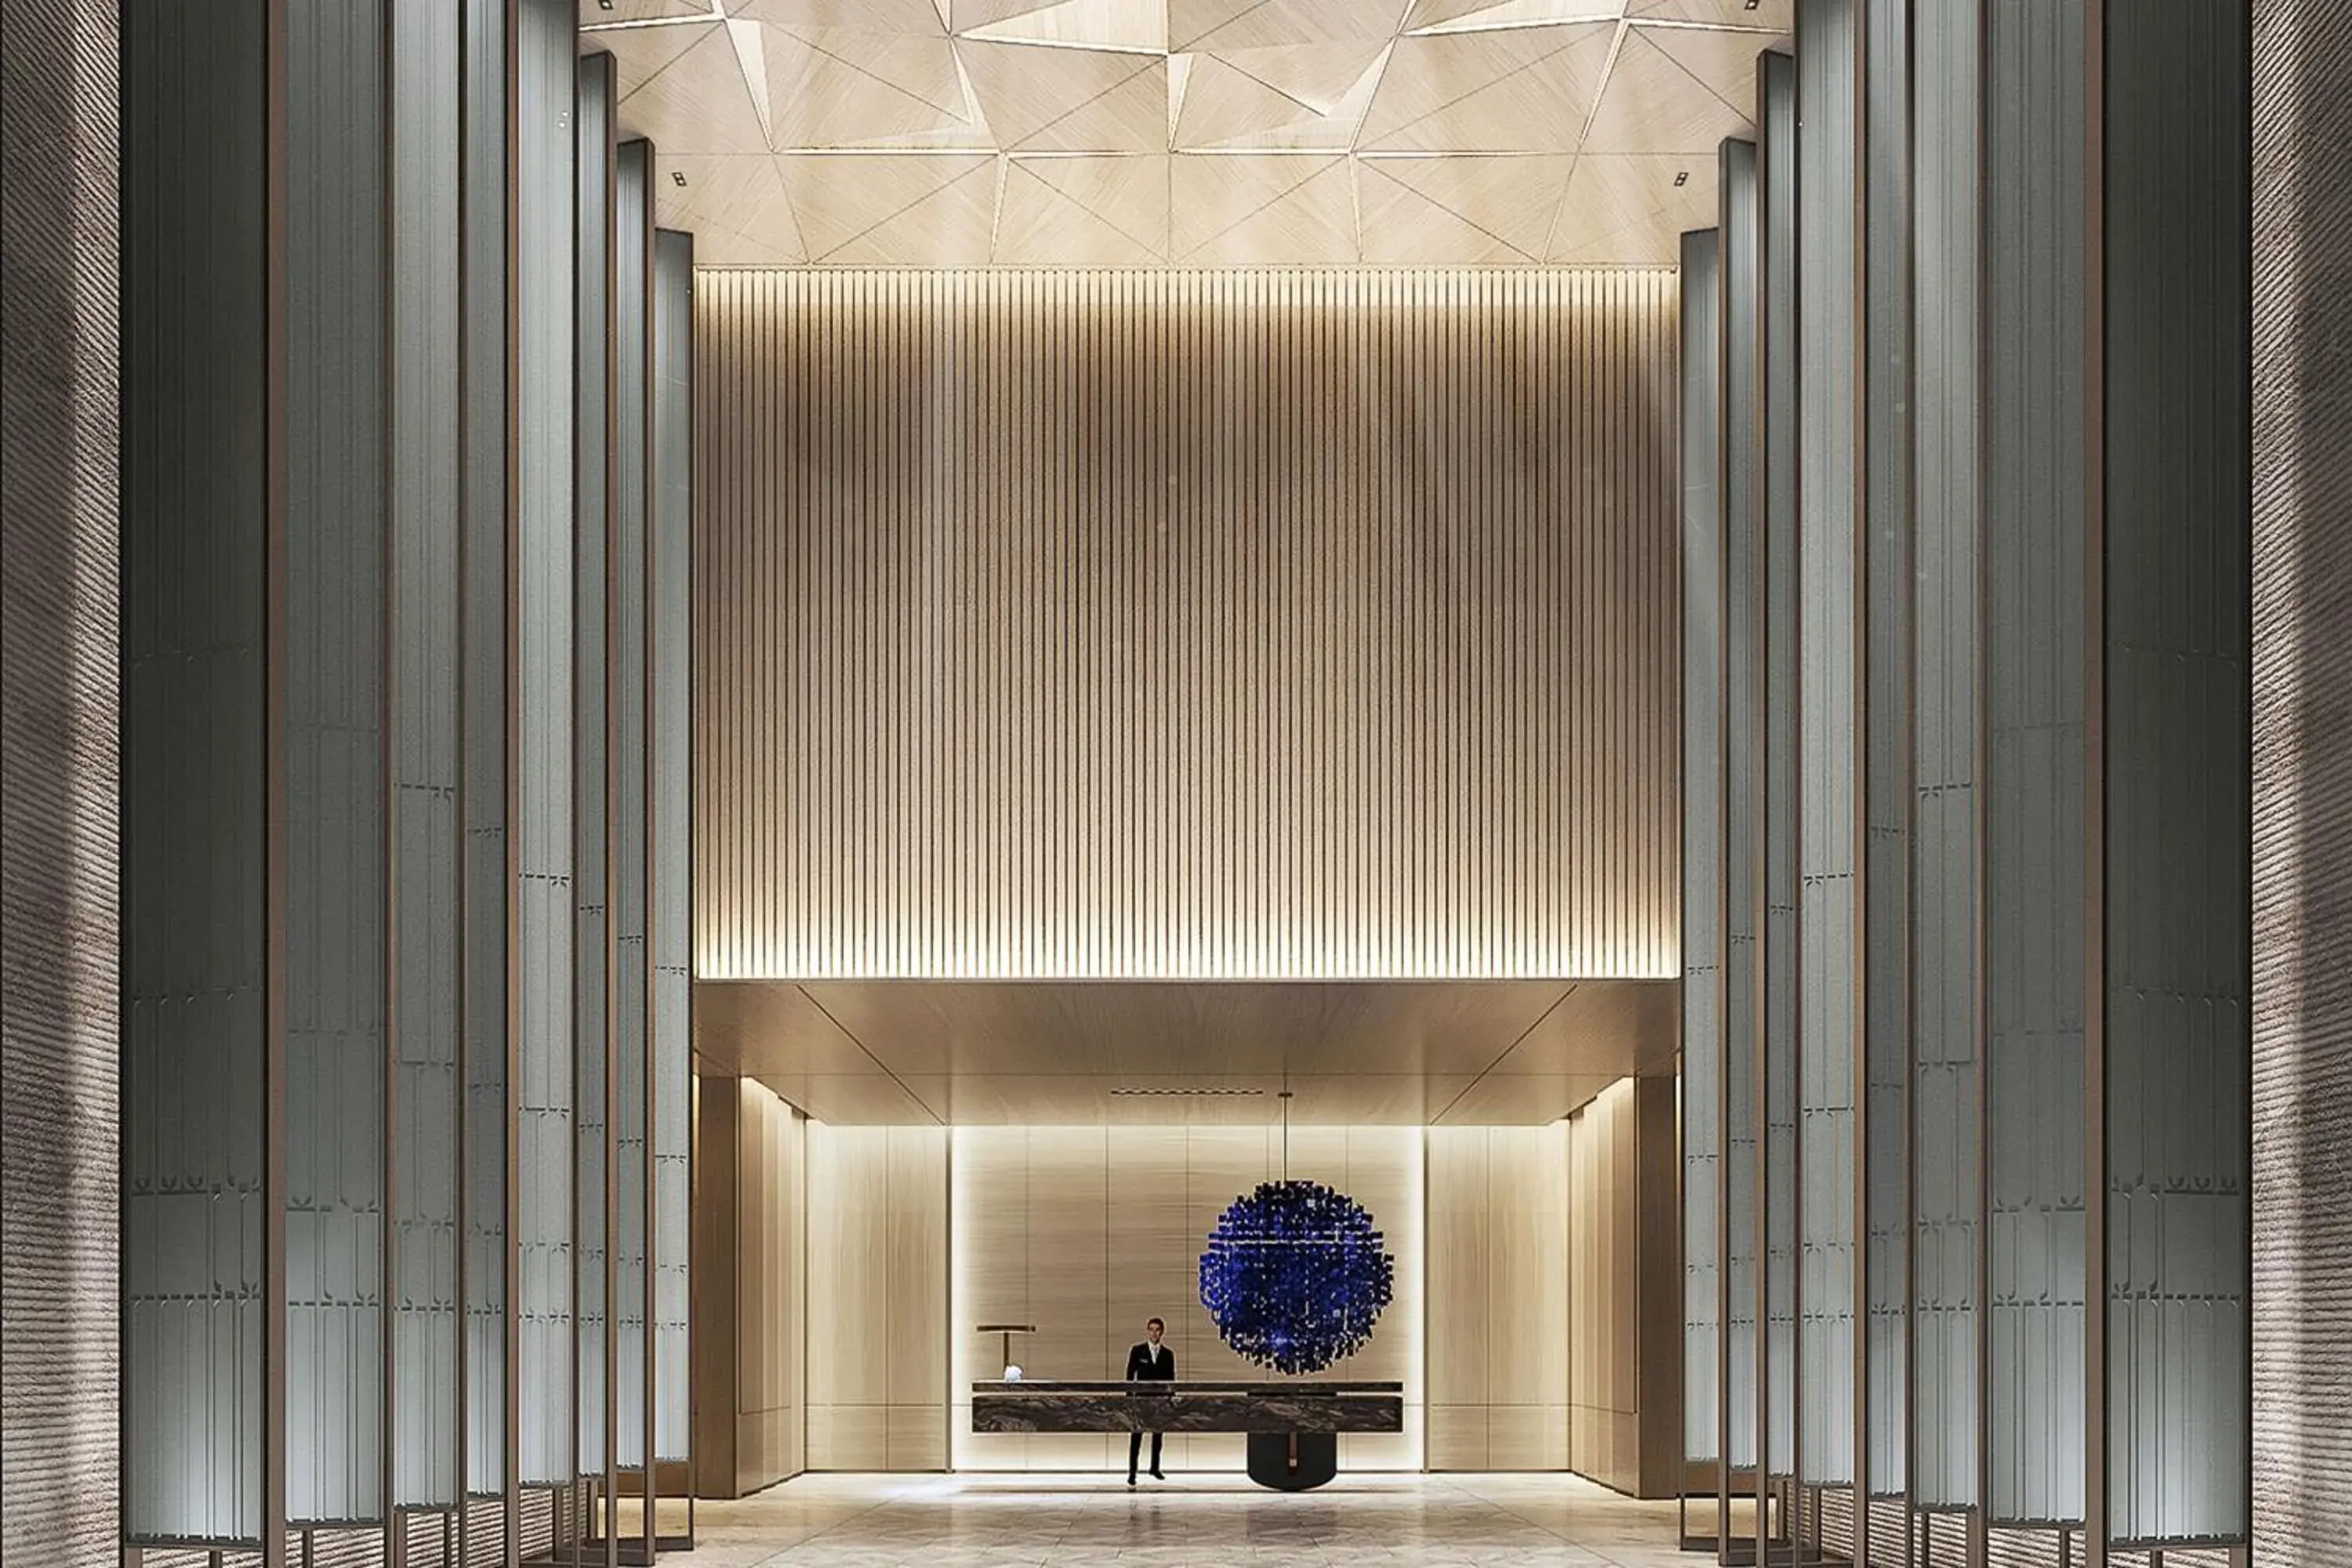 Lobby or reception in JW Marriott Hotel Changsha